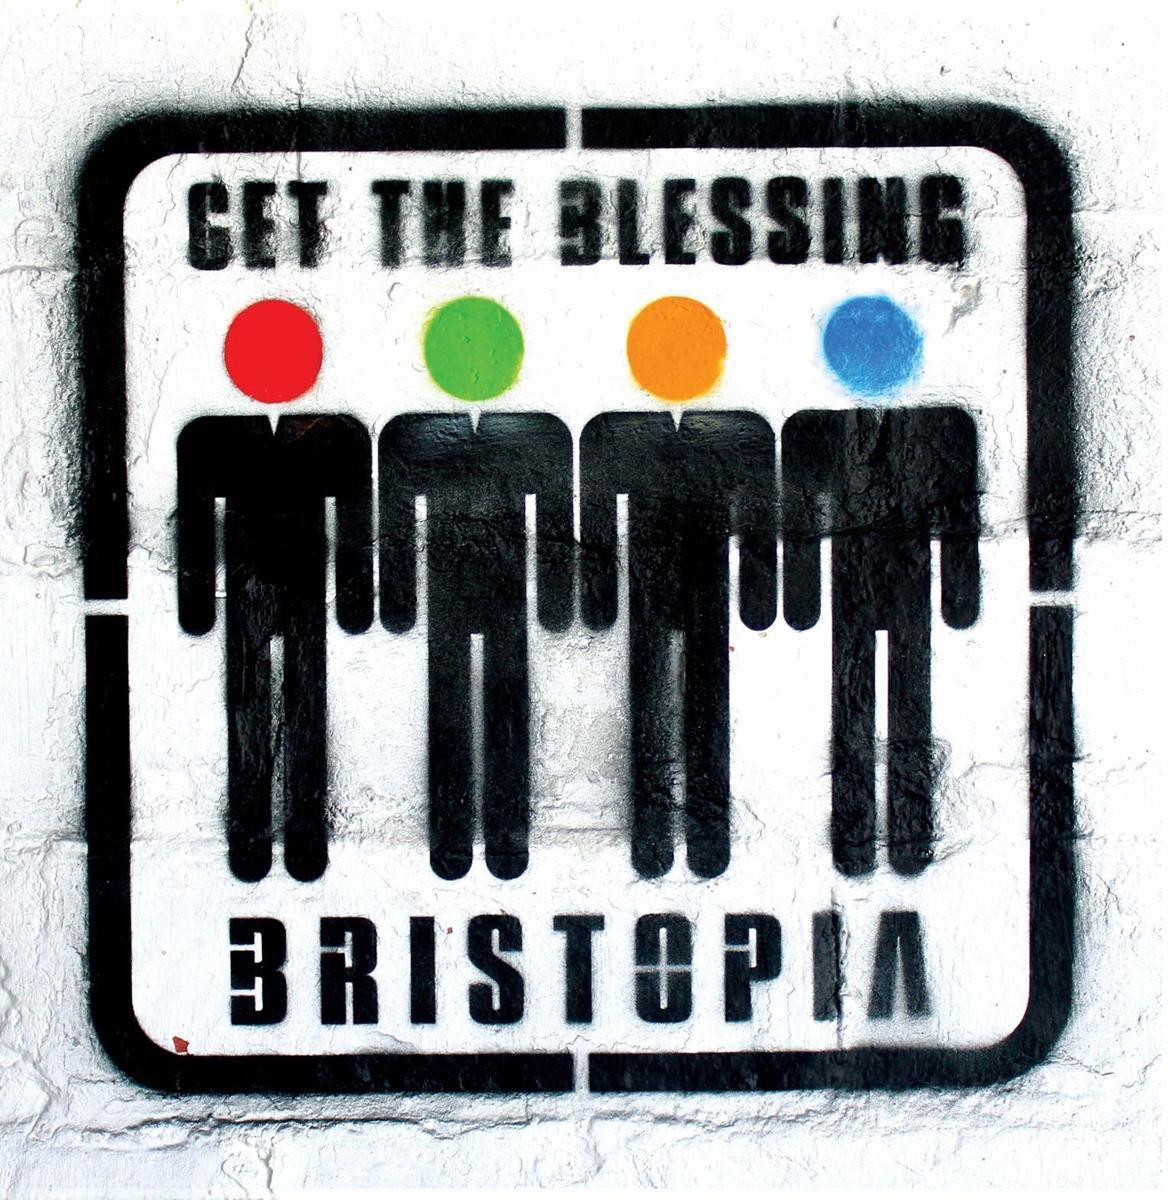 Bristopia (Coloured Vinyl)